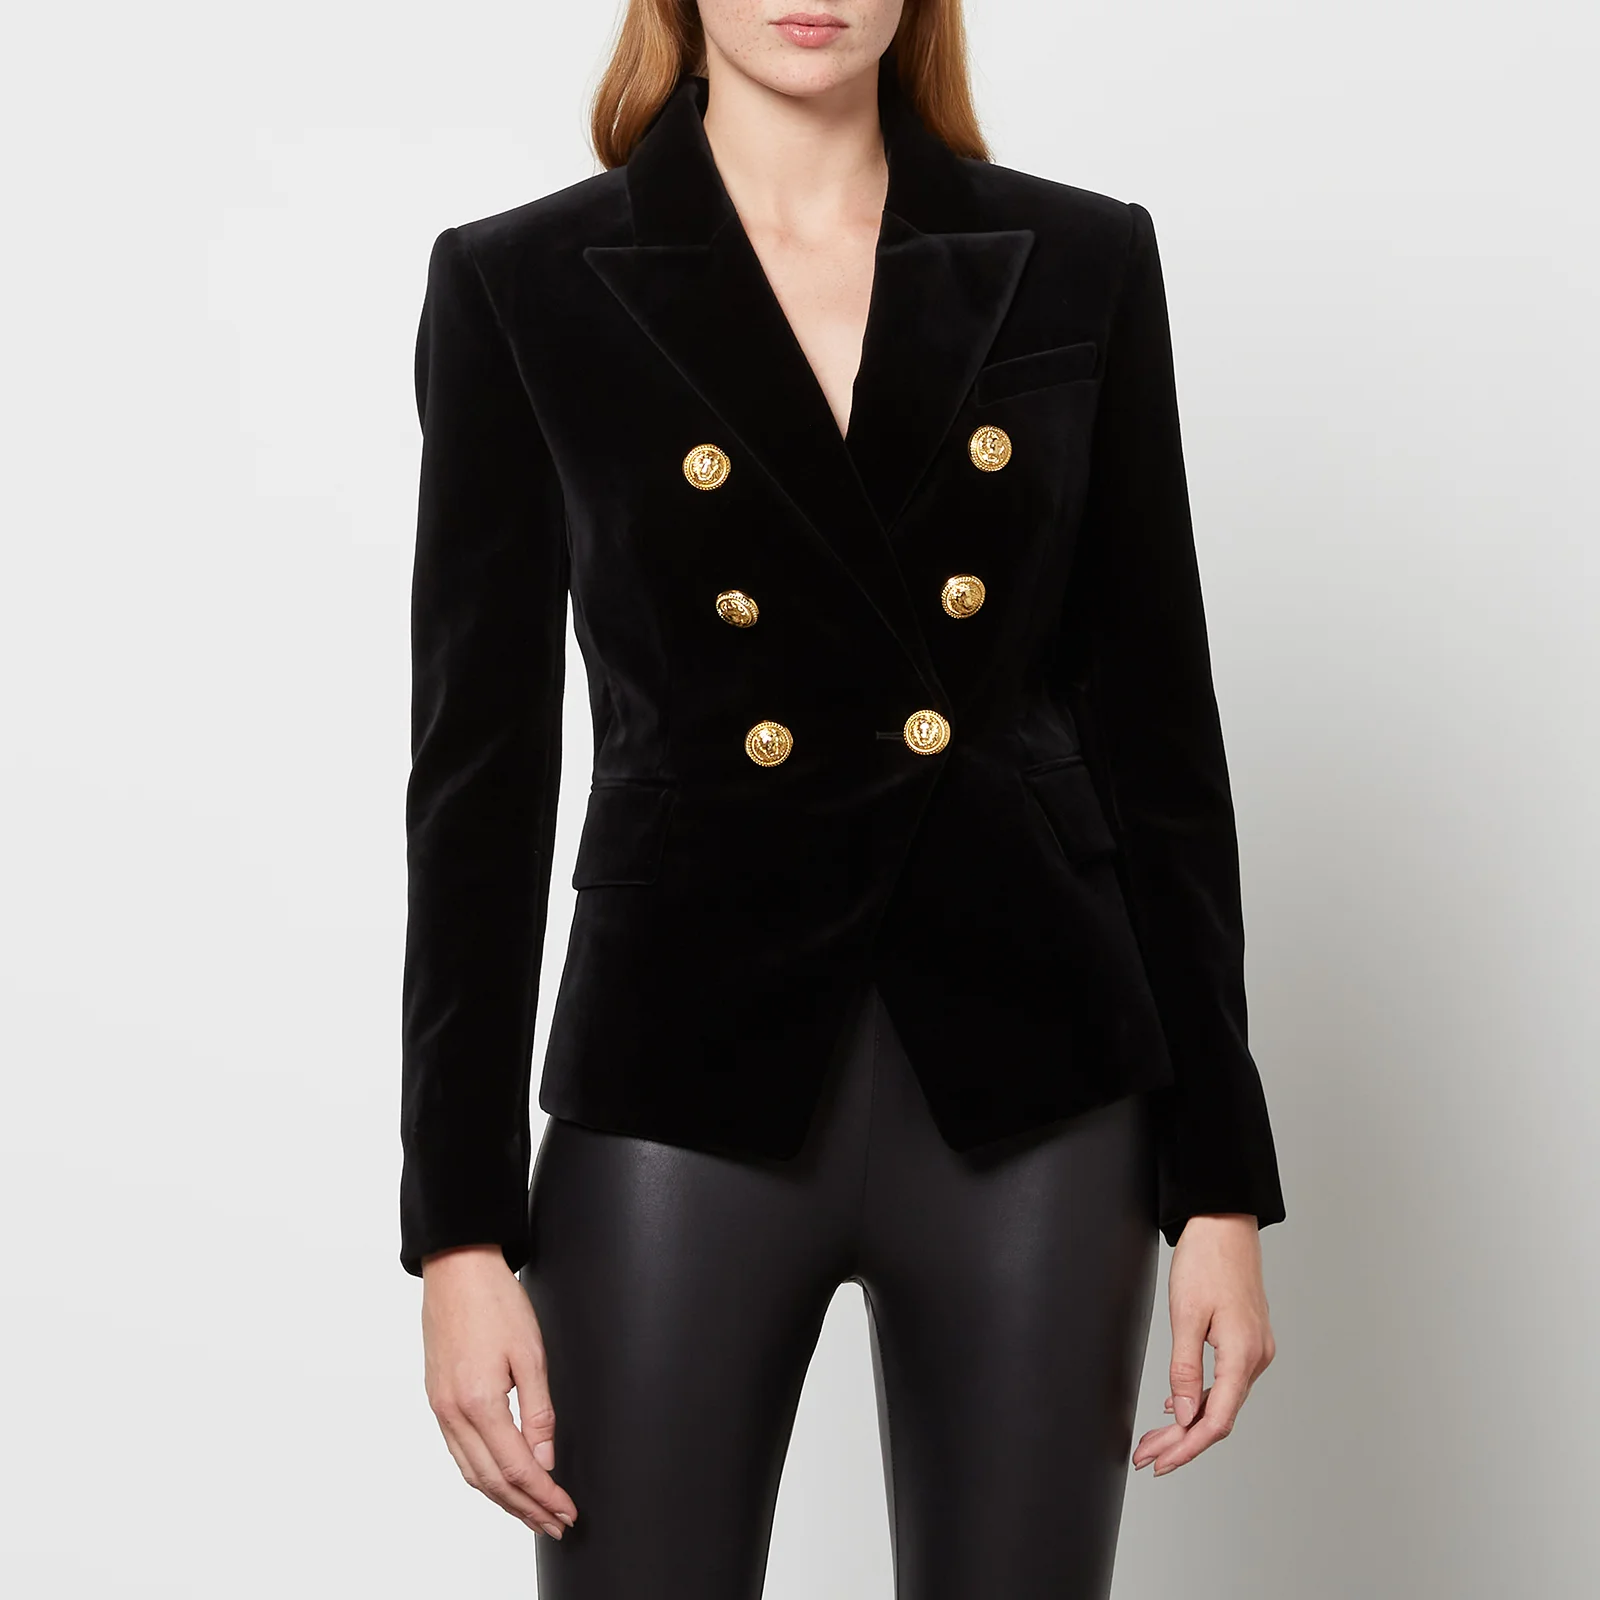 Balmain Women's 6 Buttoned Velvet Jacket - Black Image 1